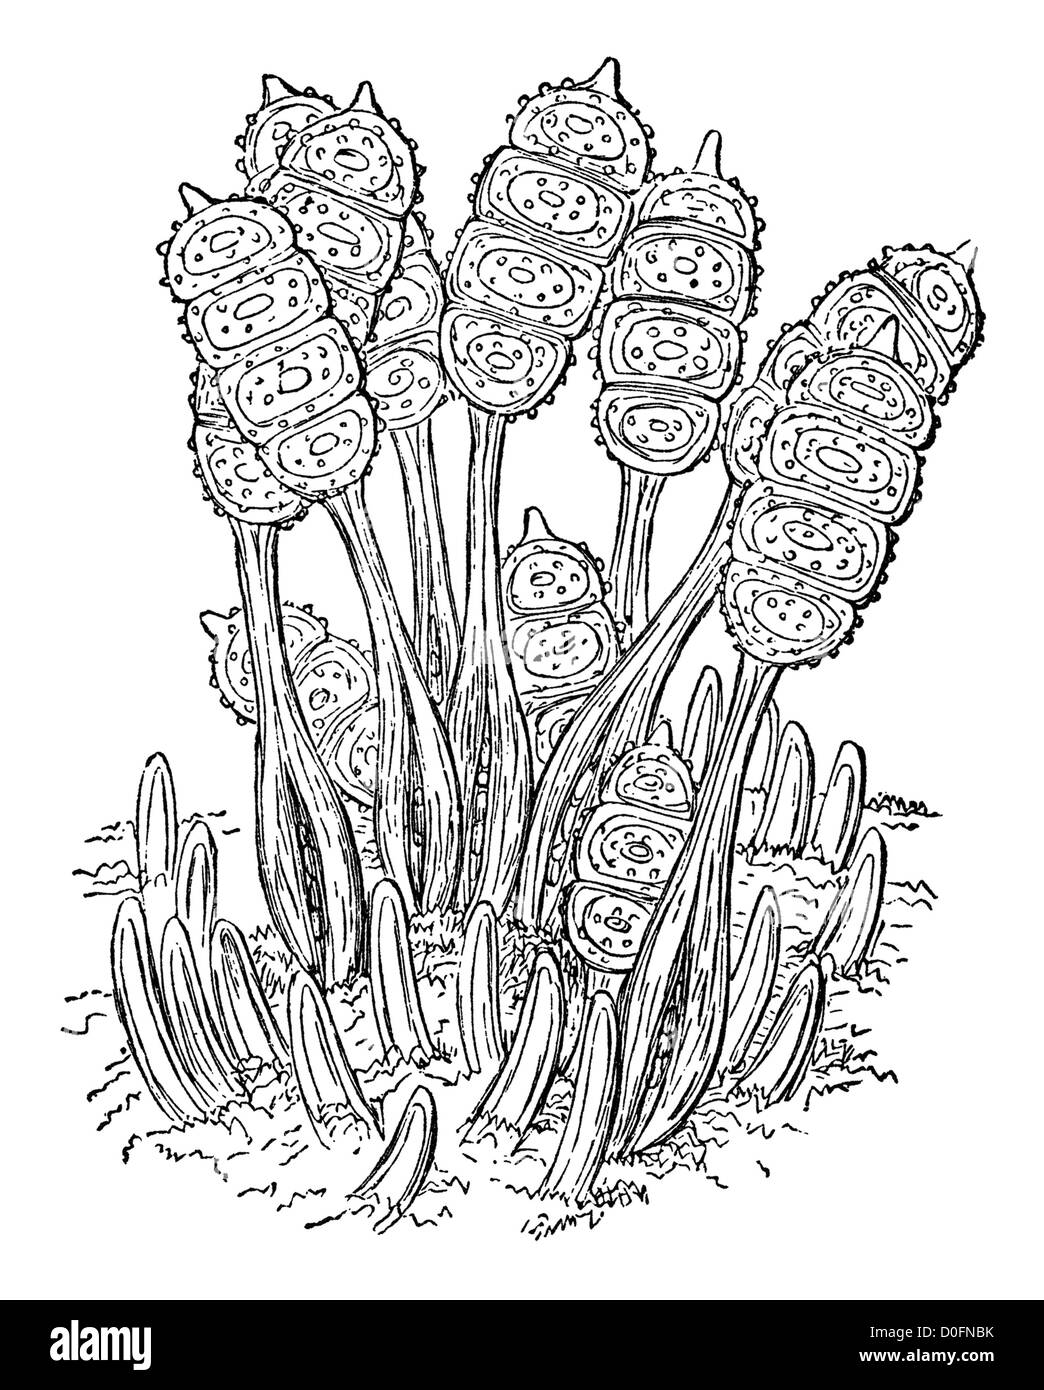 Bramble leaf marque champignons microscopiques maladie des plantes, illustration de livre ancien "Le Naturaliste Playtime' London UK, 1889. Banque D'Images